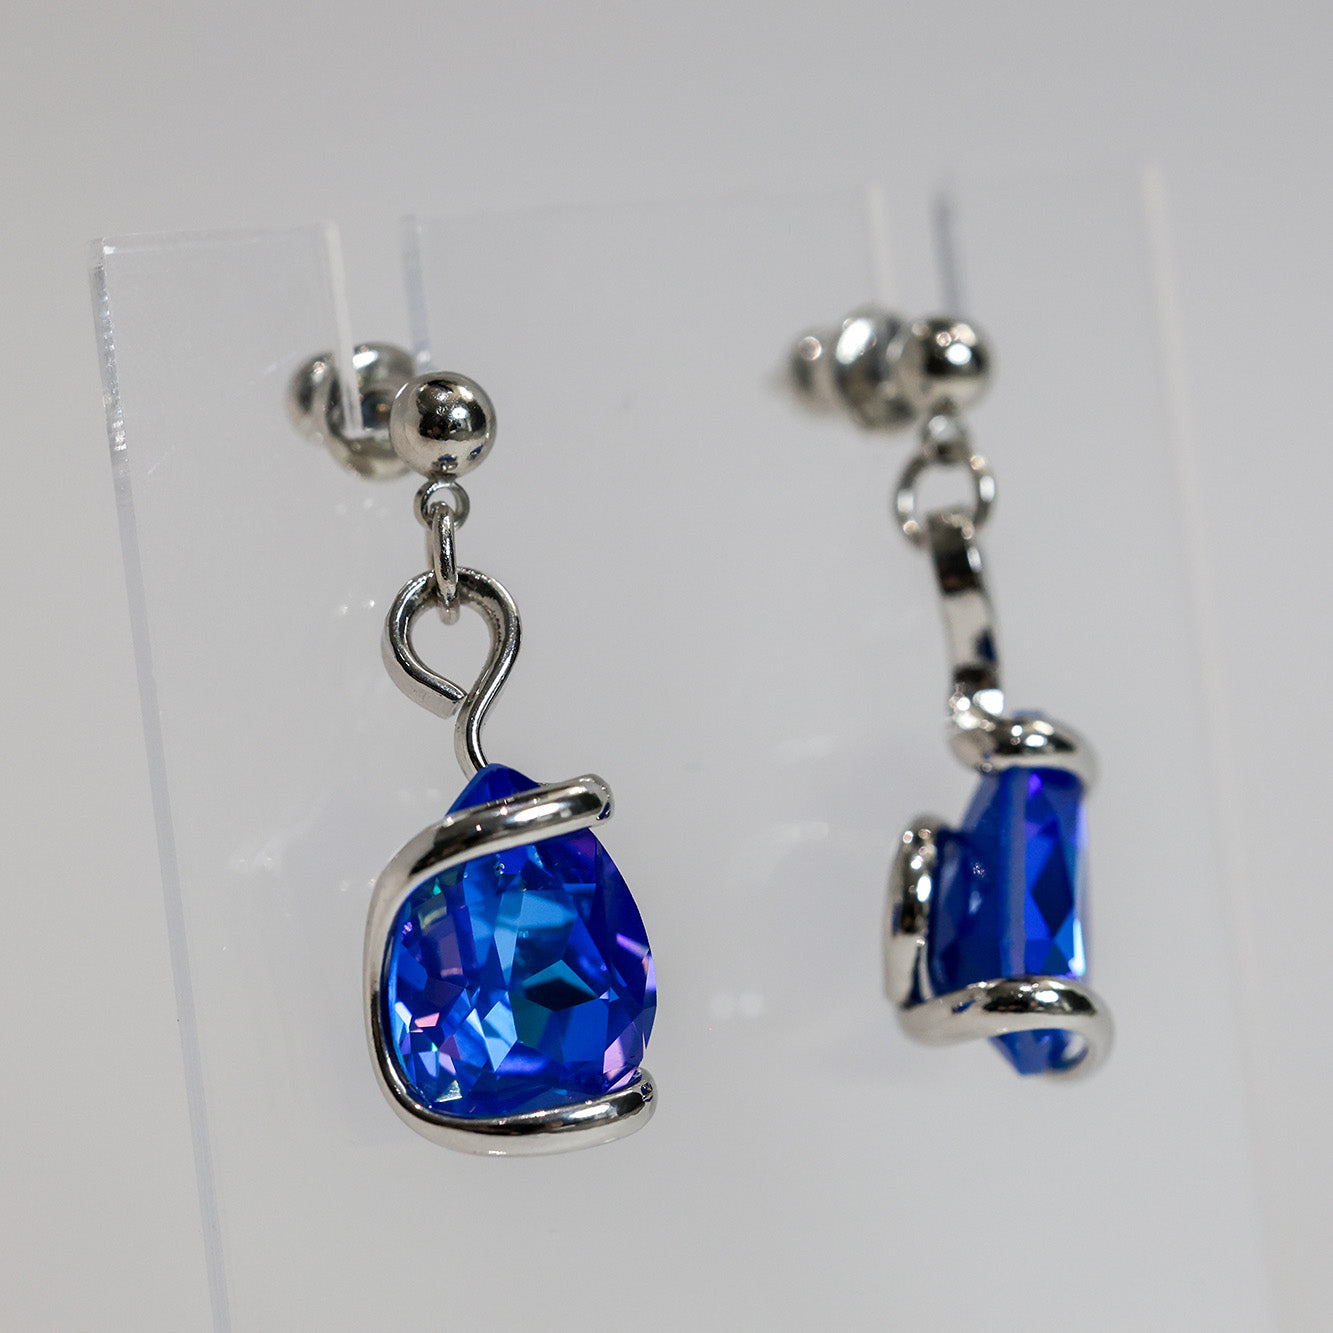 Blue Swarovski Crystal Monique Delite Earrings